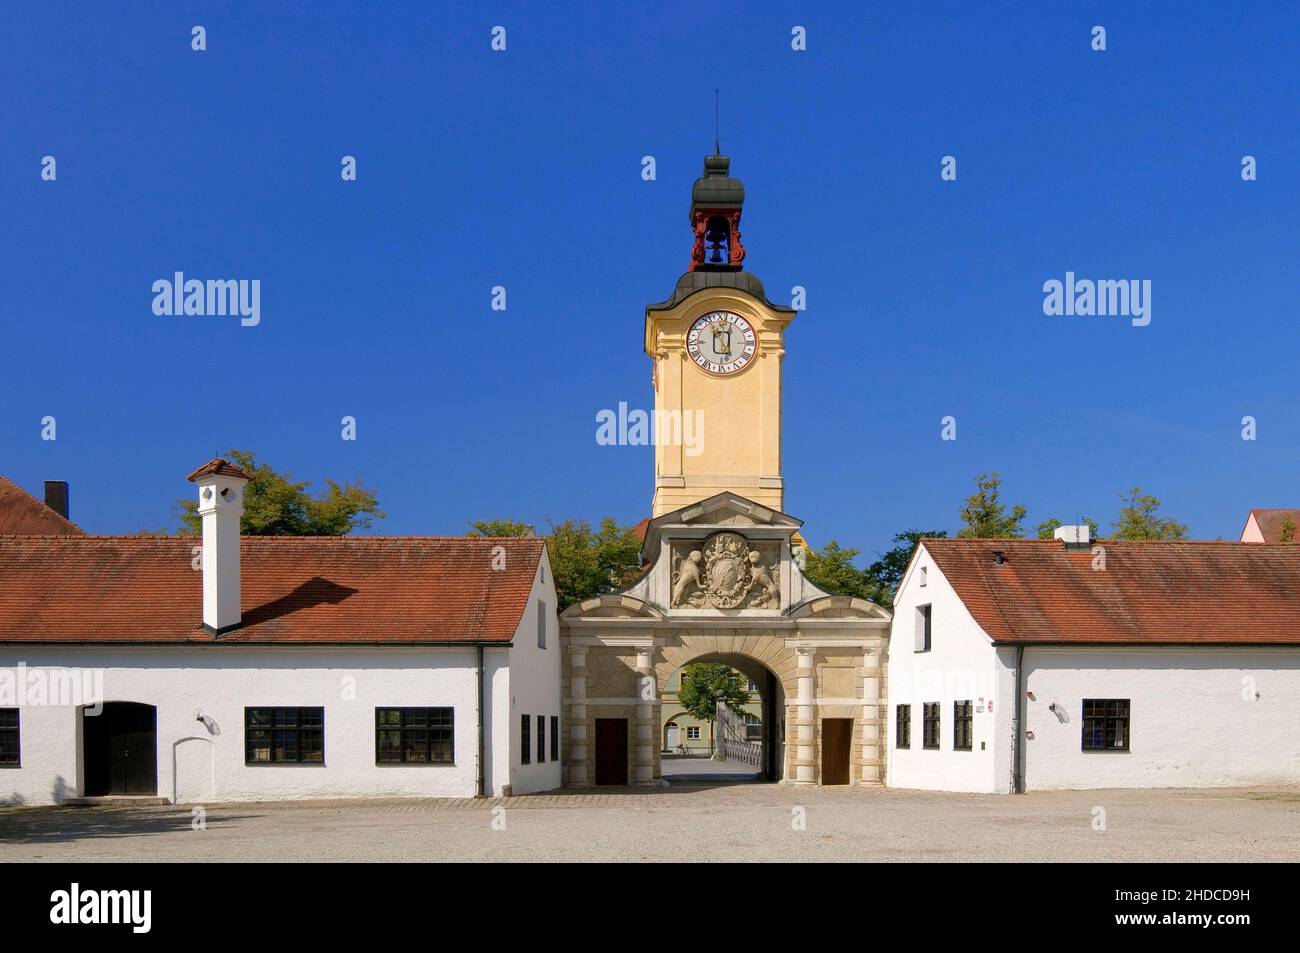 Europa, Deutschland, Bayern, Donau, Ingolstadt,  Neues Schloss, Blick zum barocken Uhrturm, Bayrisches Armeemuseum, Stock Photo